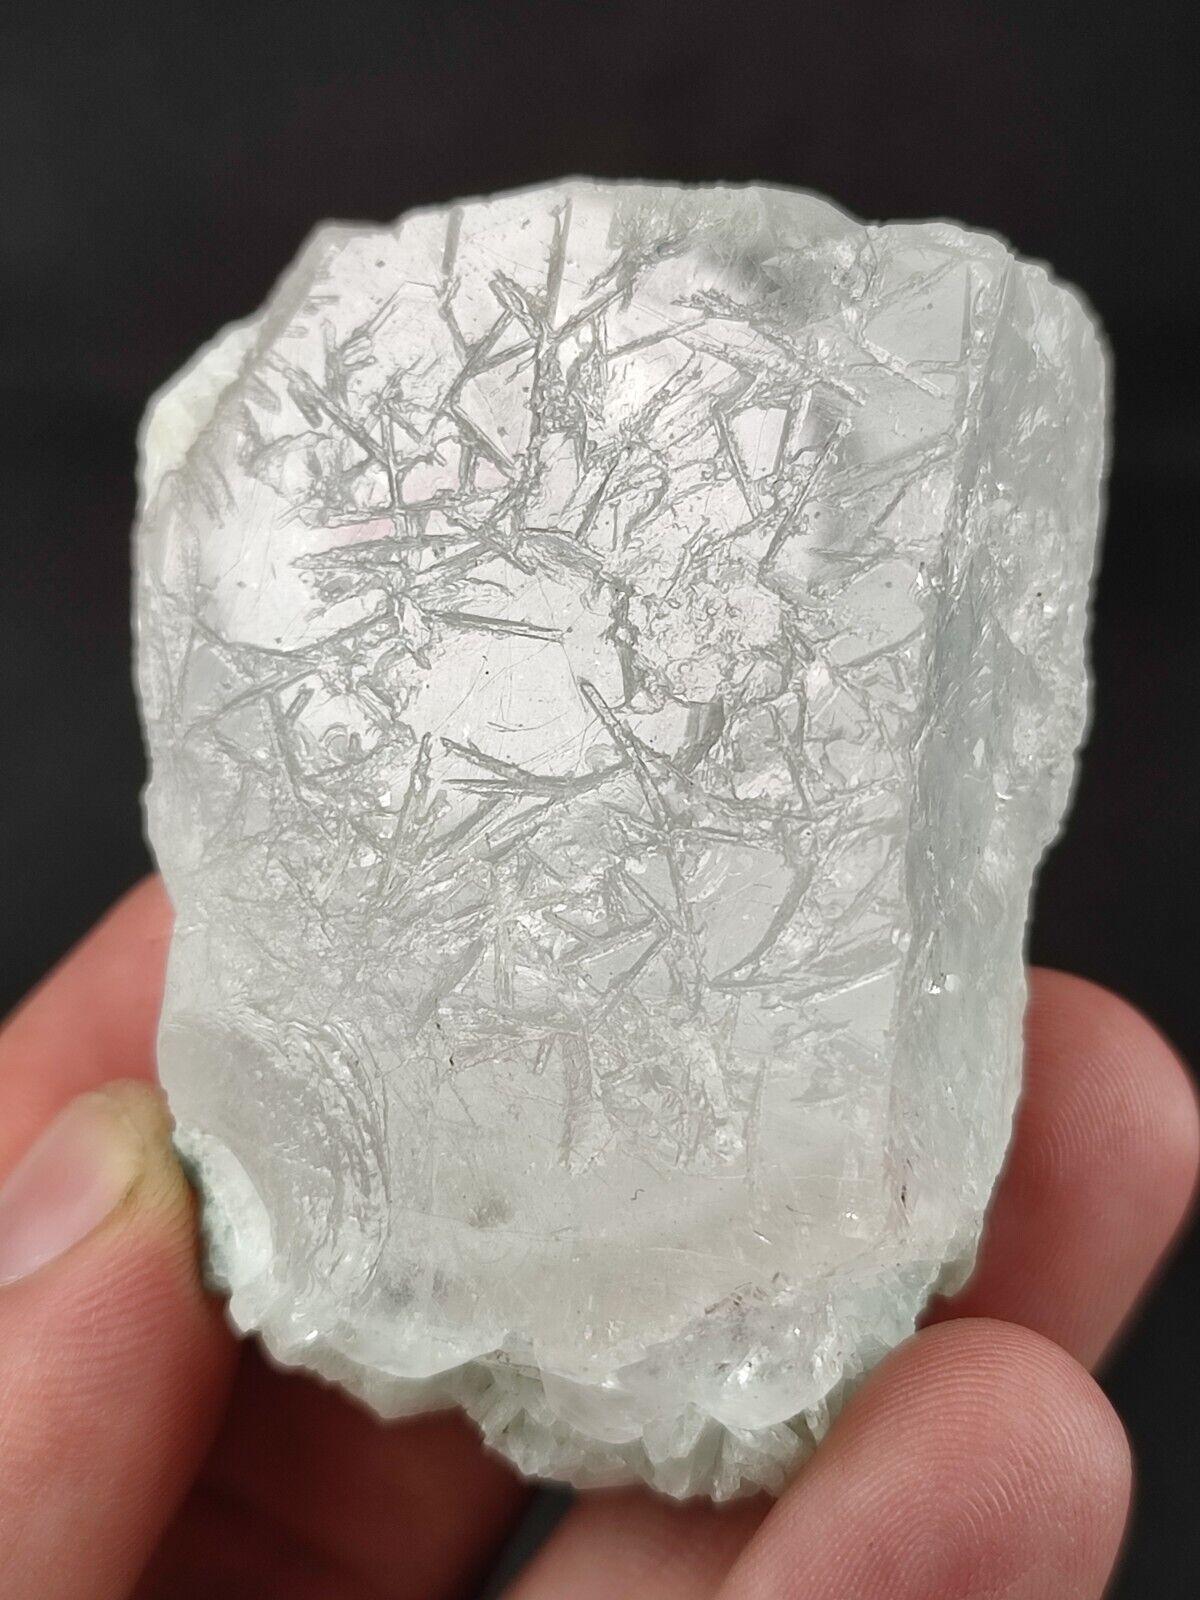 83-gm AQUAMORGANITE Bi-colored Beryl Crystal